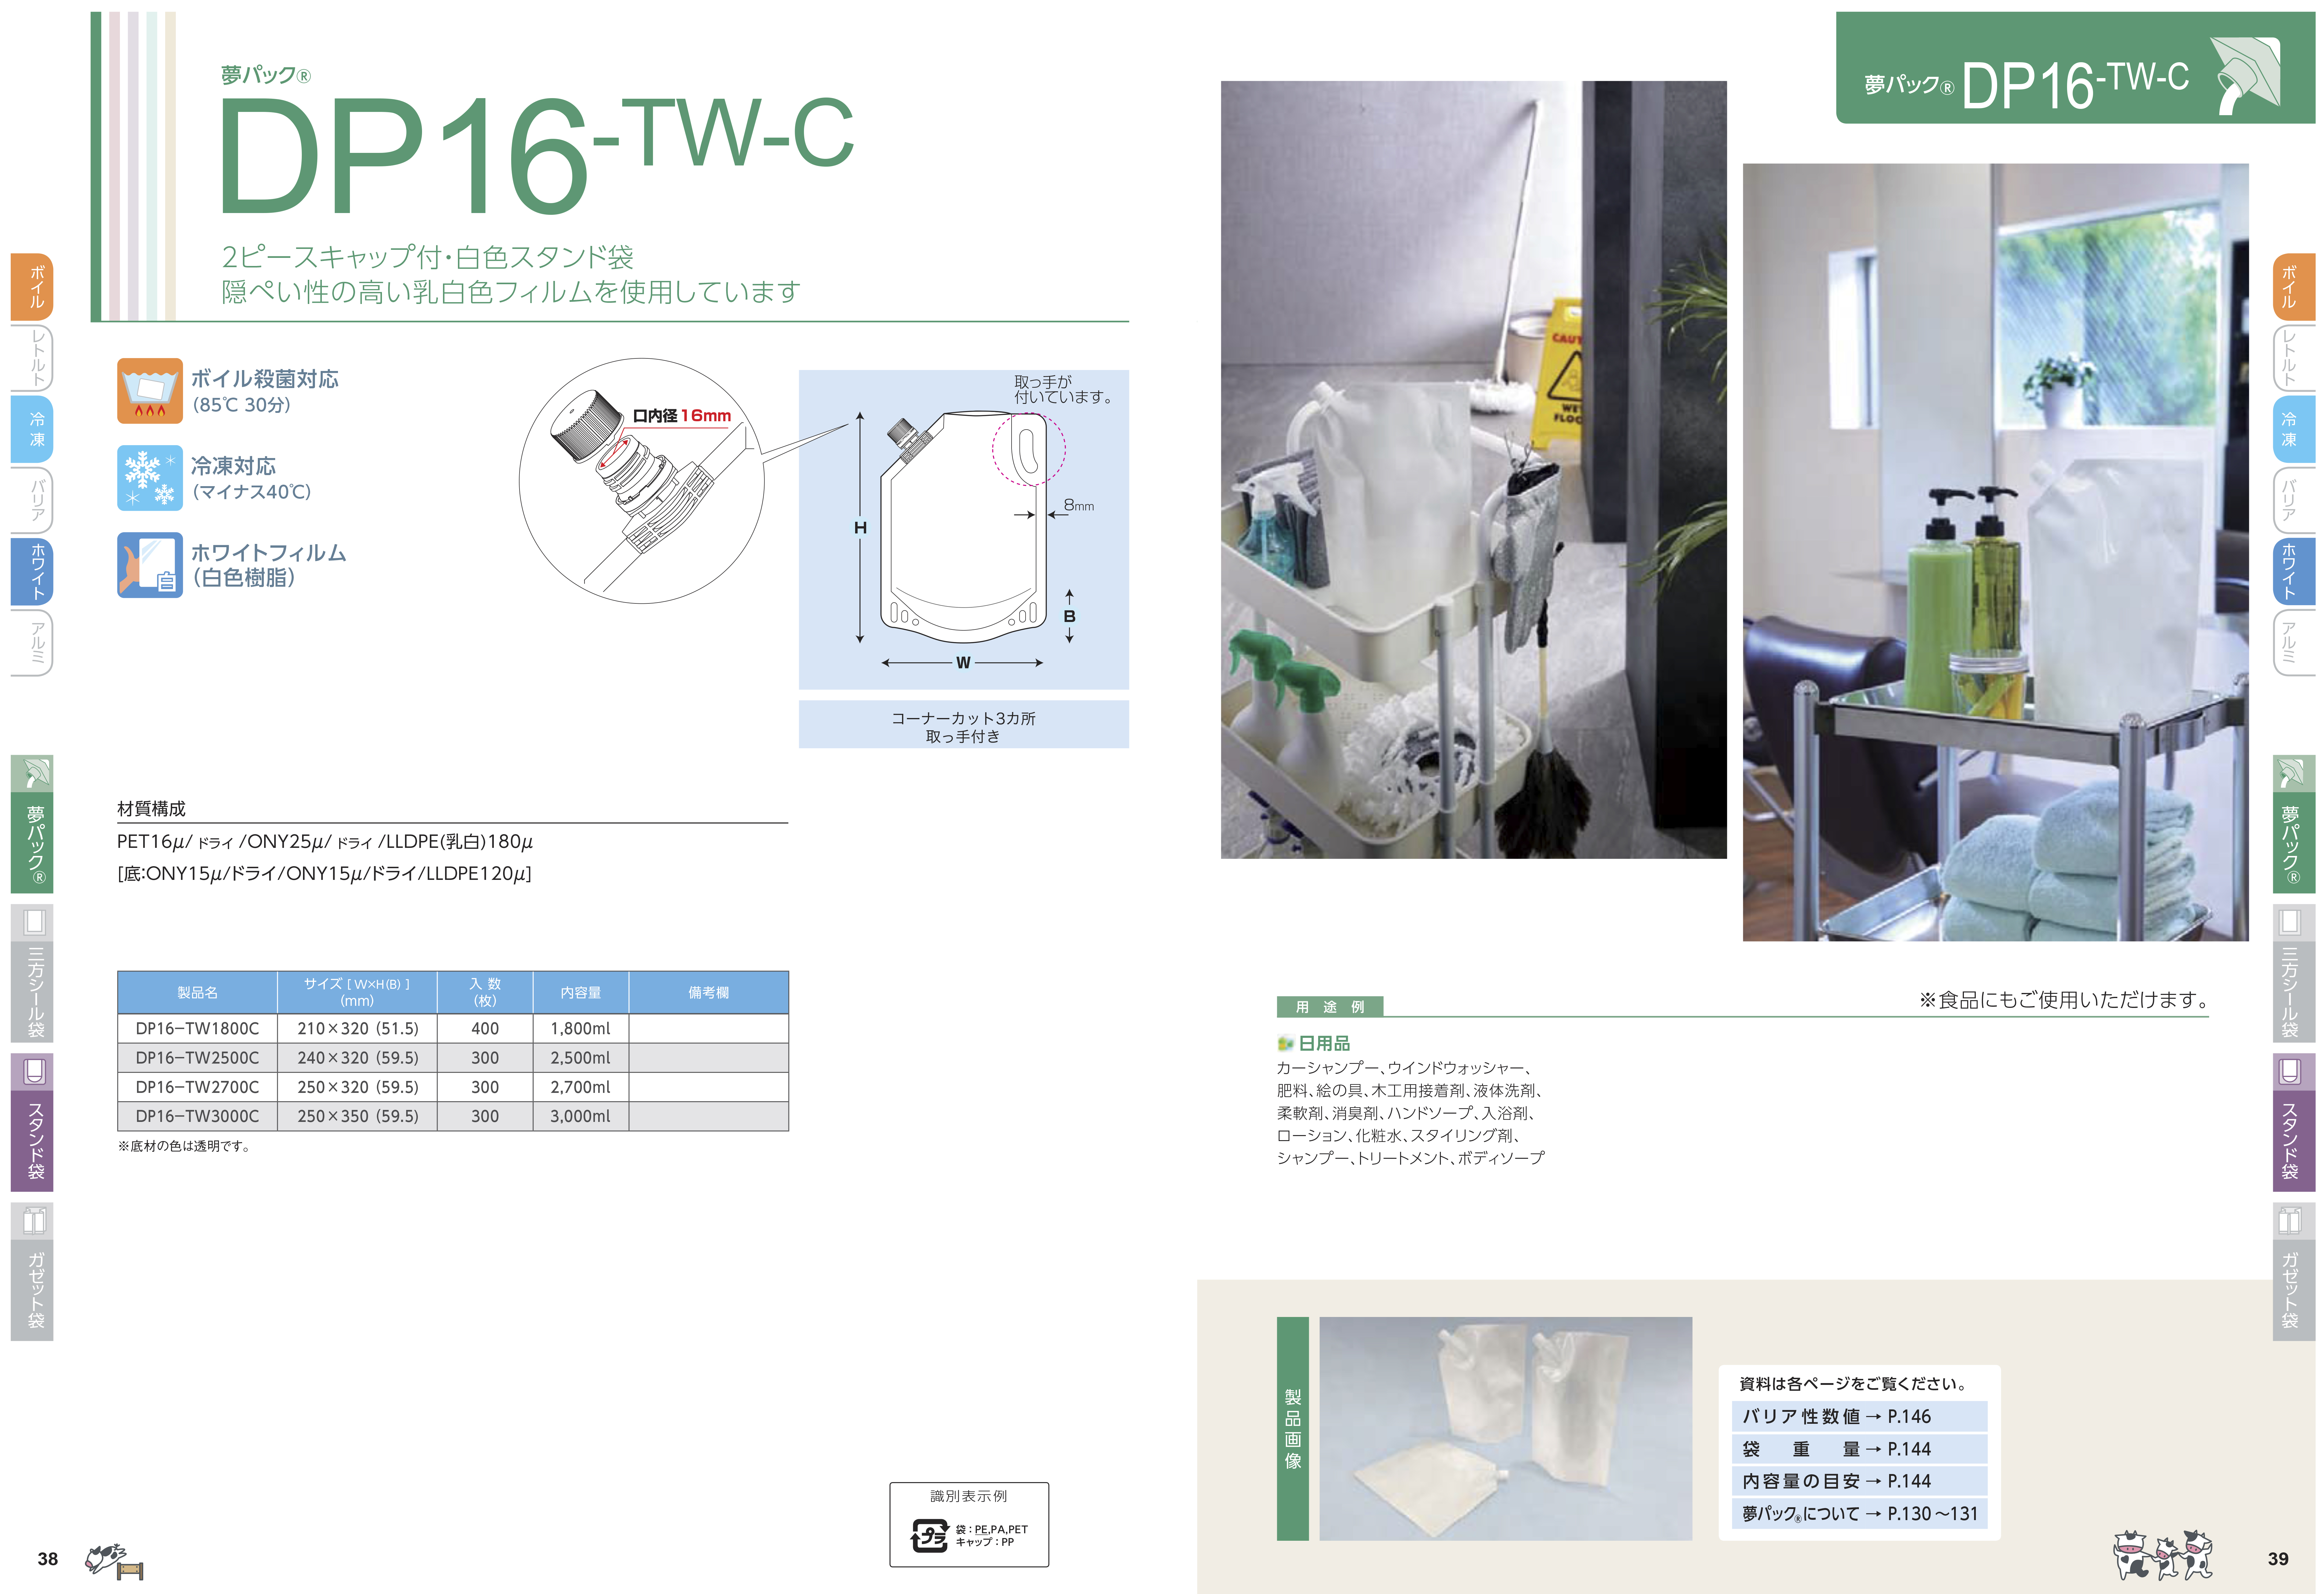 DP16-TW2700C商品画像2